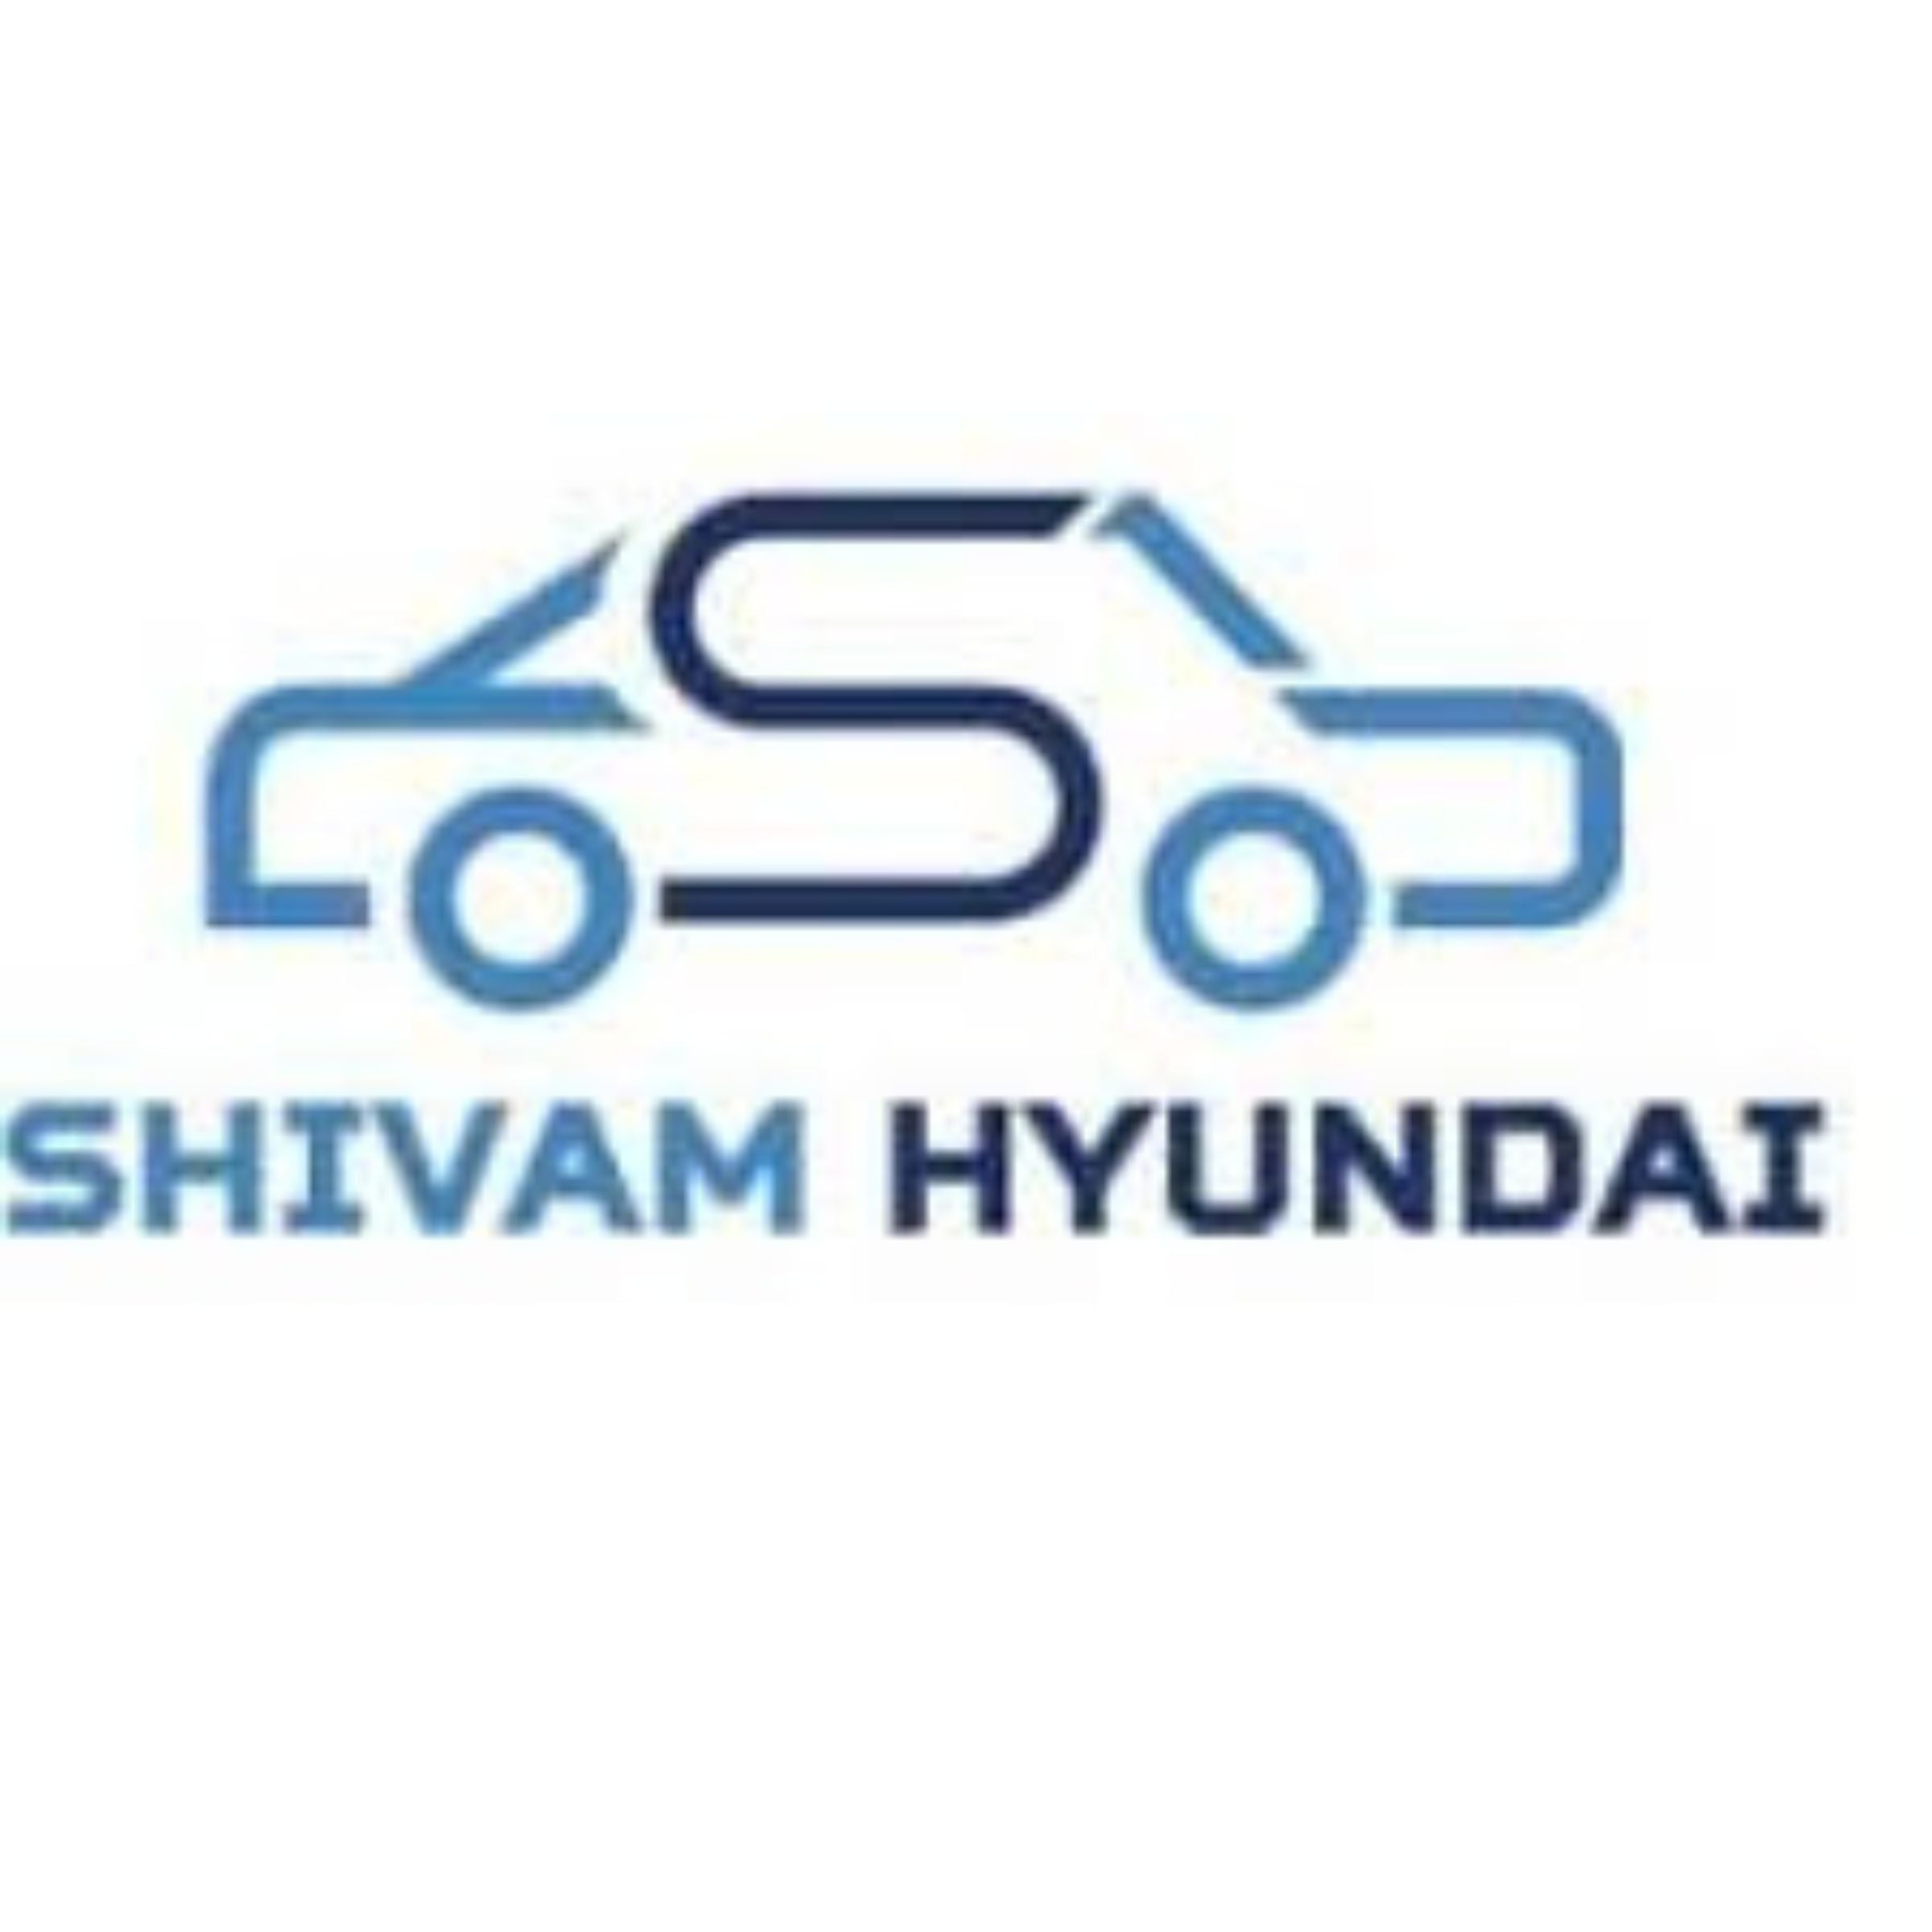 Shivam Hyundai